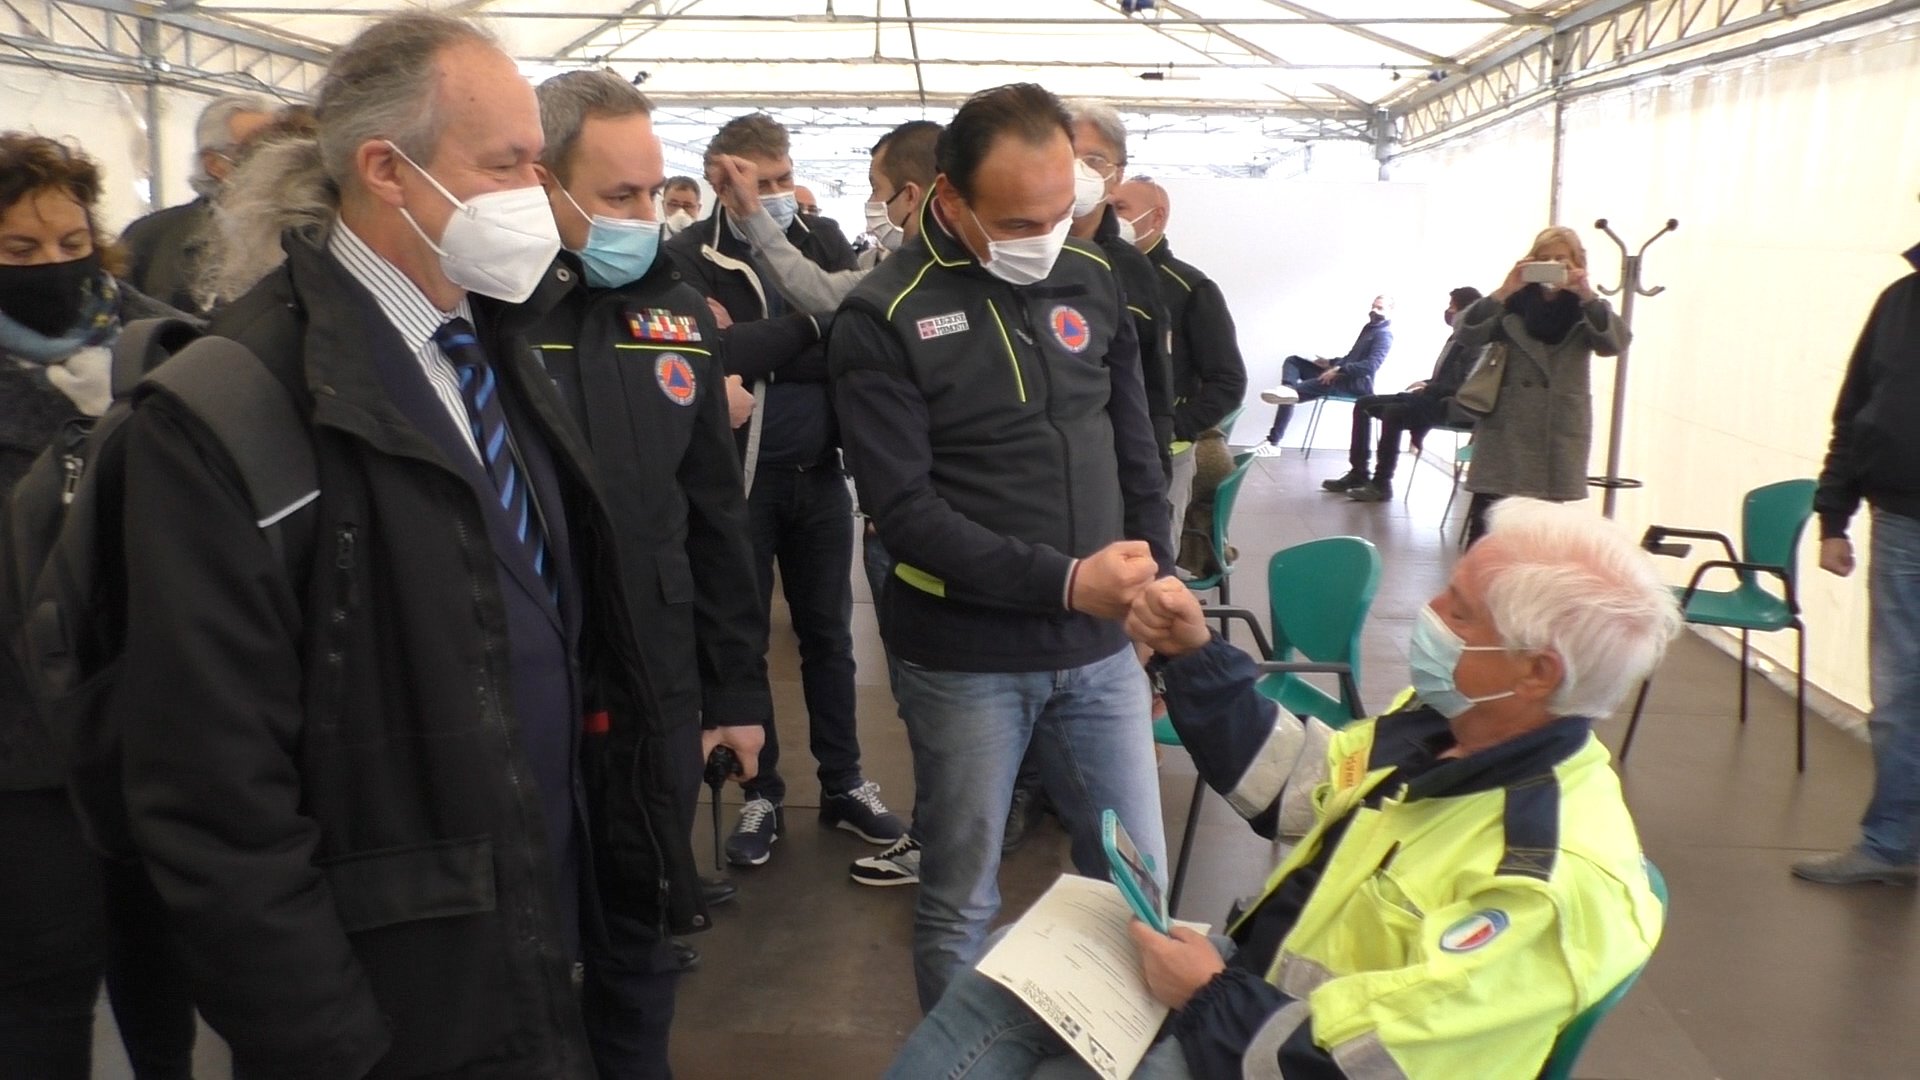 Mercoledì il presidente Cirio in provincia: visita al centro vaccini Valfrè e poi a Tortona e Gavi